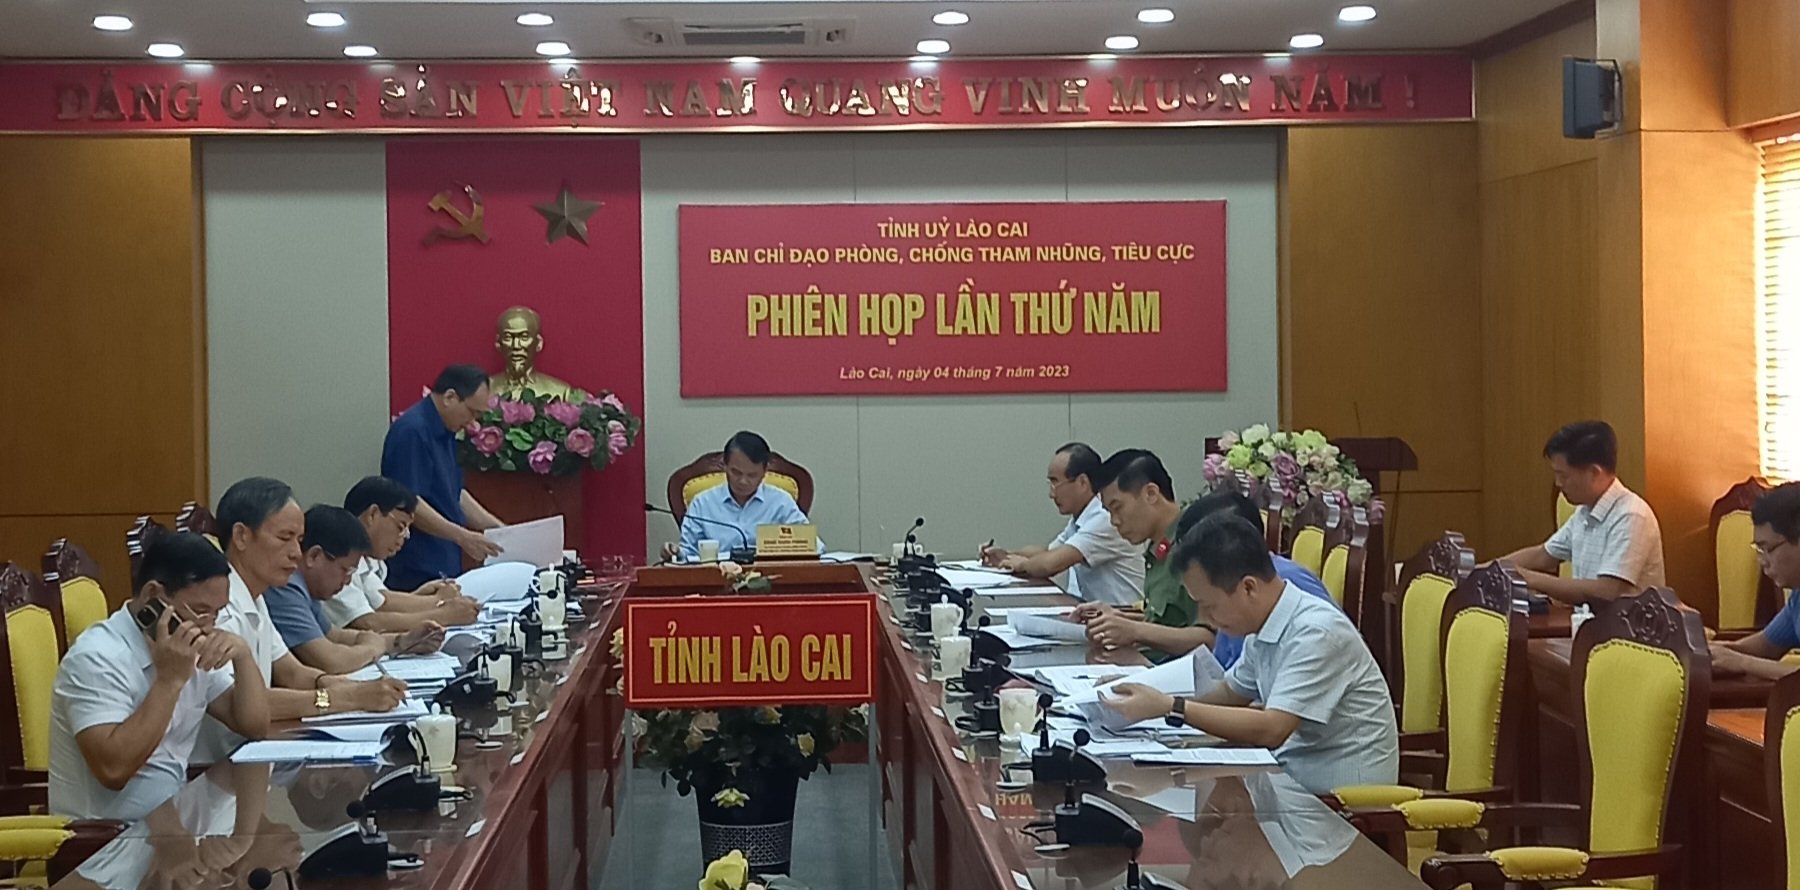 Phiên họp thứ 5 Ban Chỉ đạo phòng, chống tham nhũng, tiêu cực tỉnh Lào Cai